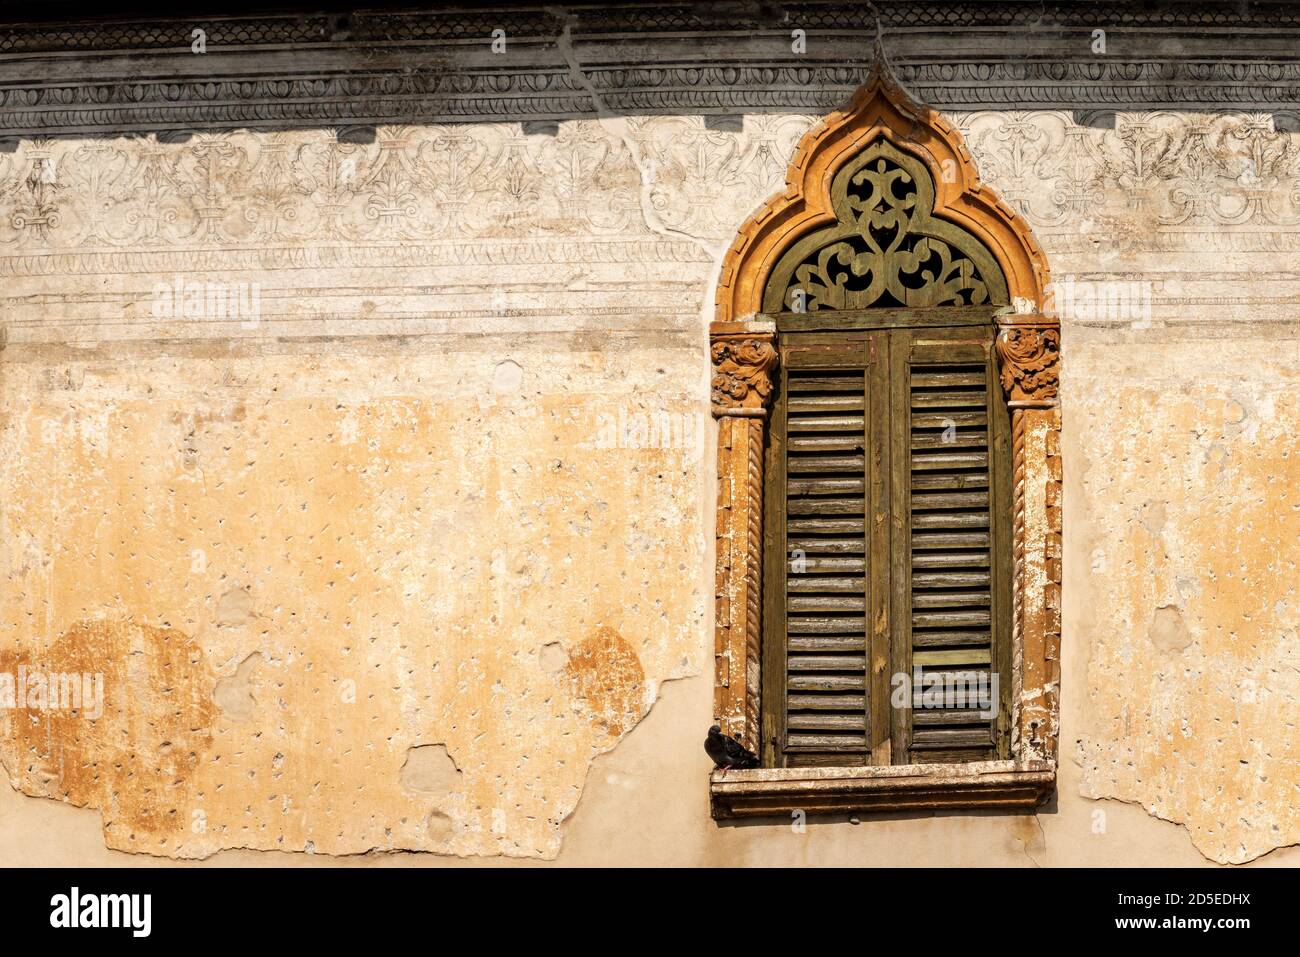 Primo piano di un'antica finestra con arco in stile gotico veneziano, nel centro di Verona. Patrimonio dell'umanità dell'UNESCO, Veneto, Italia, Europa. Foto Stock